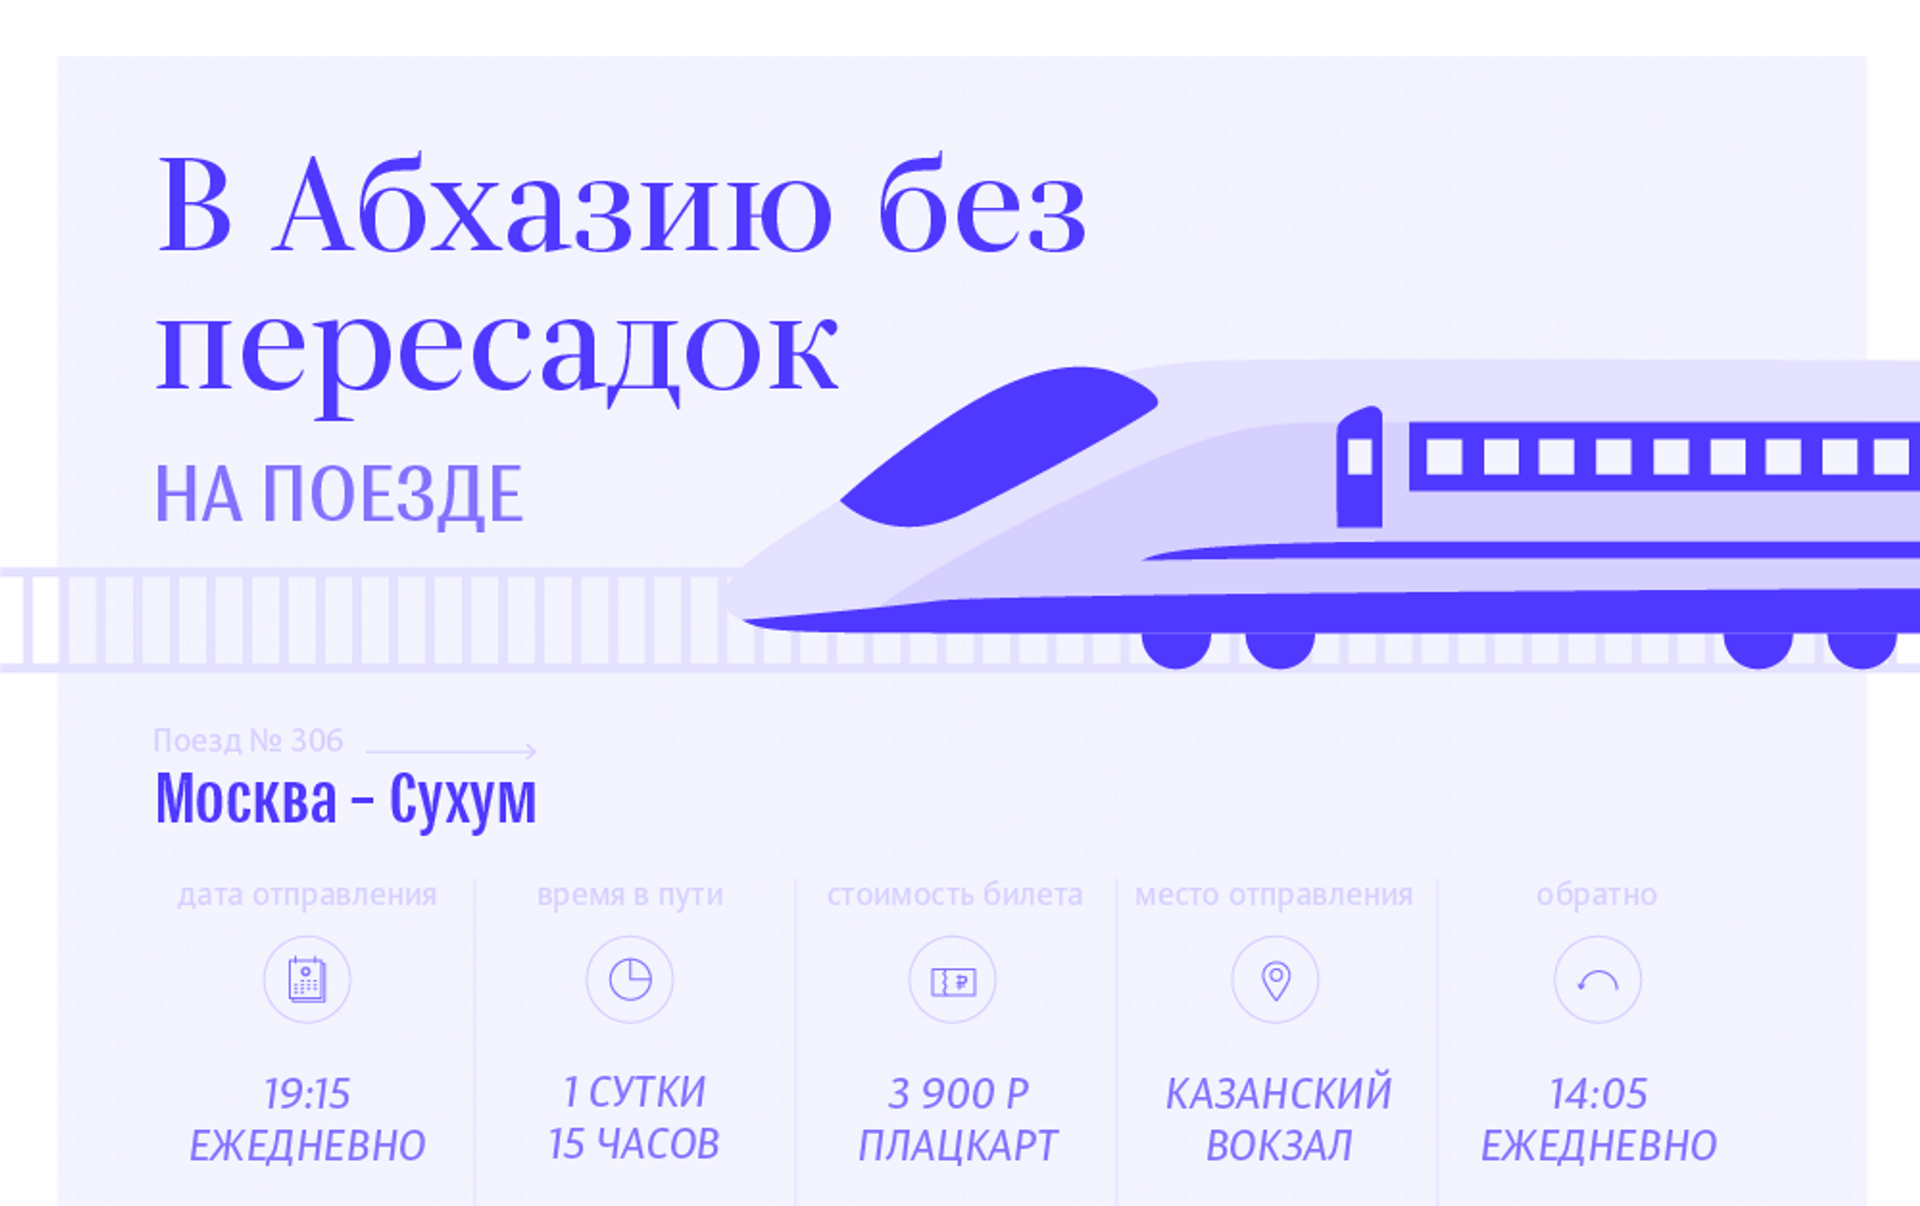 Самолет в абхазию купить. Билеты в Абхазию на поезде. Абхазия билеты на самолет из Москвы. Билет на самолет до Абхазии. Абхазия билеты на самолет.